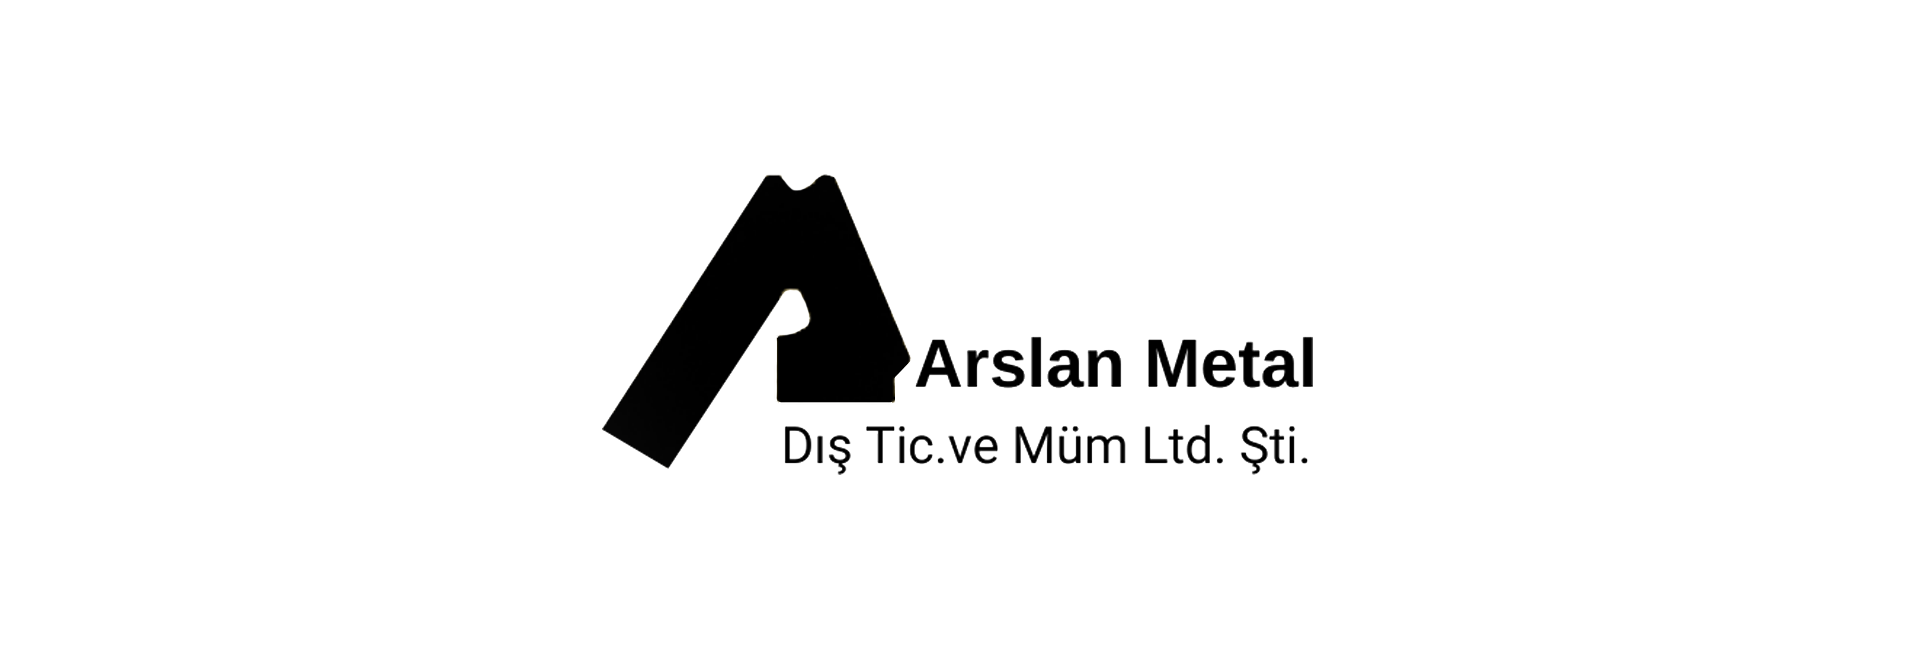 Arslan Metal